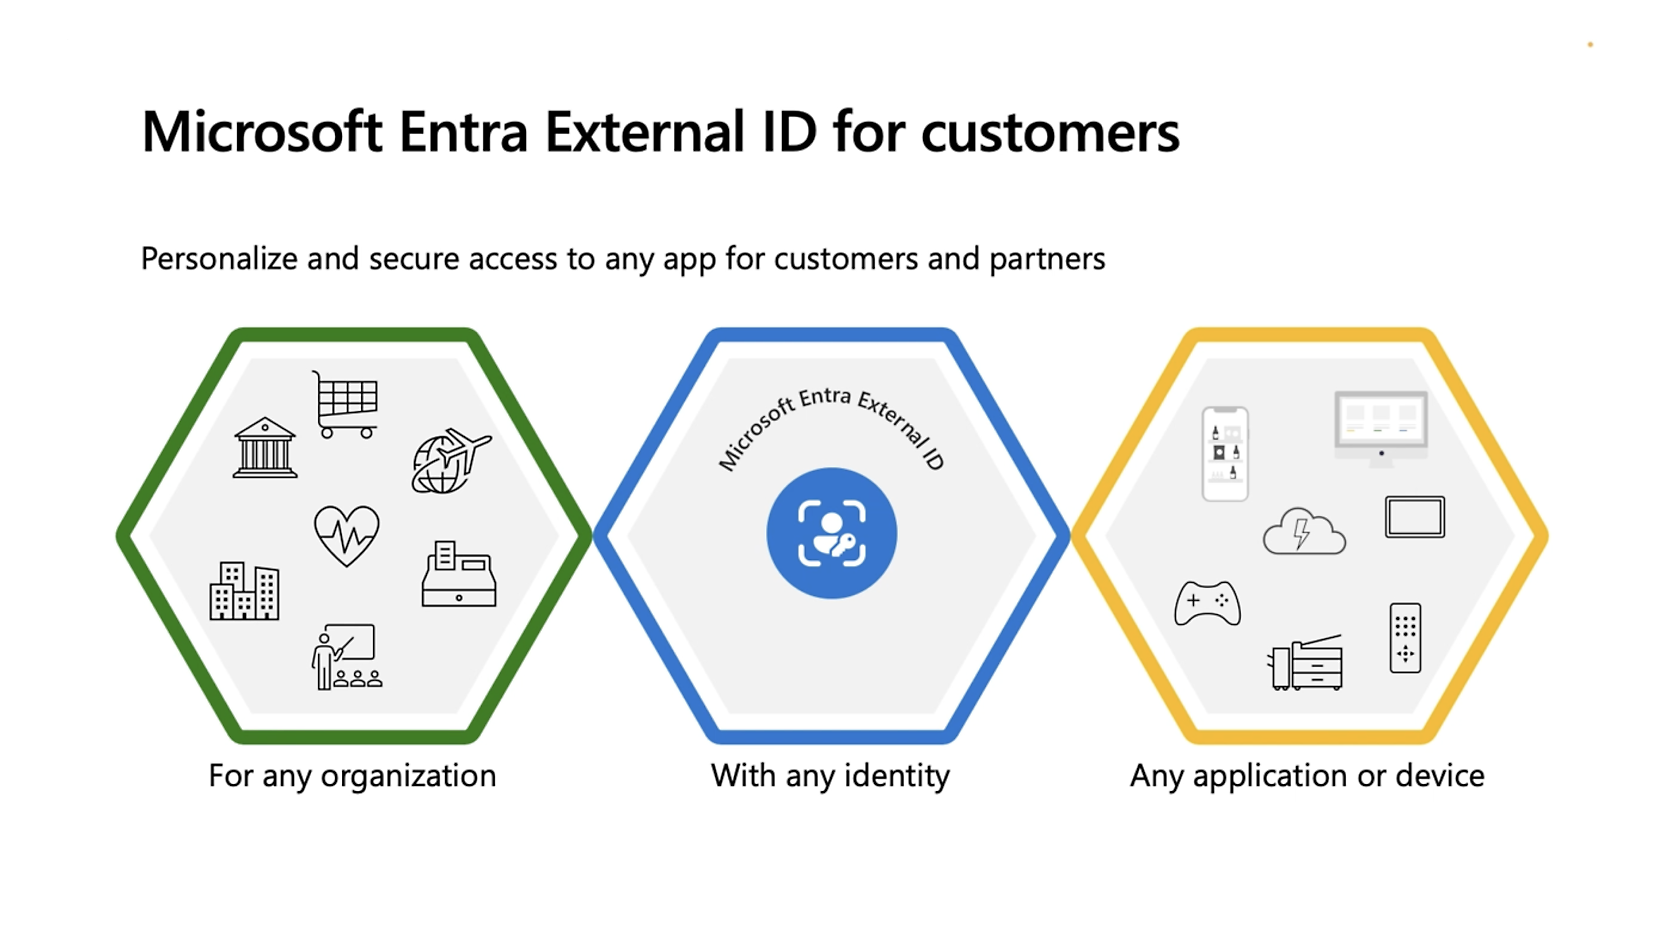 Infographie montrant les fonctionnalités de l’ID externe Microsoft Entra : trois hexagones étiquetés